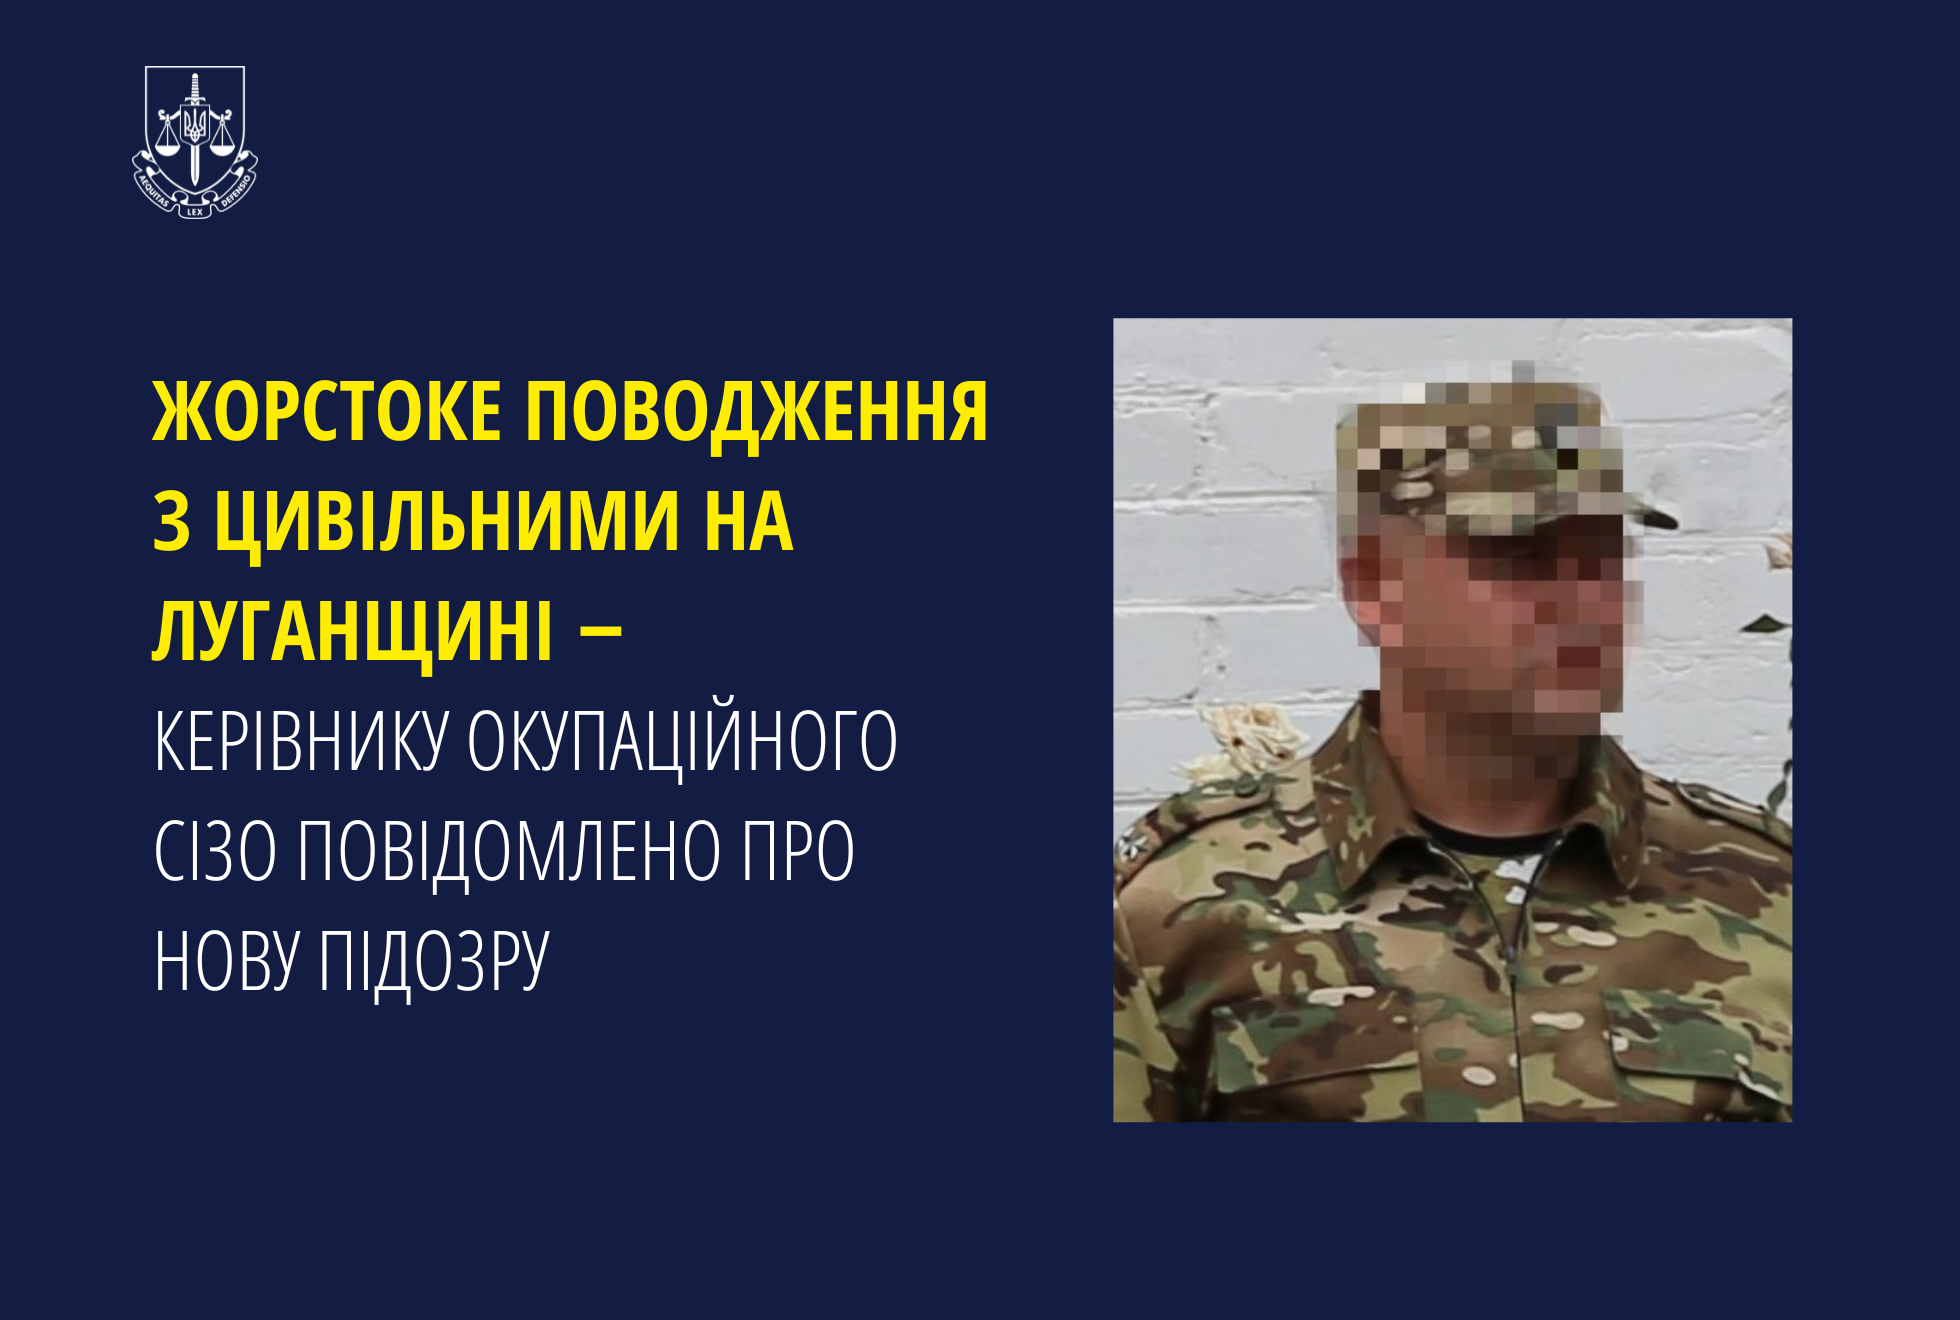 Жорстоке поводження з цивільними на Луганщині ‒ керівнику окупаційного СІЗО повідомлено про нову підозру